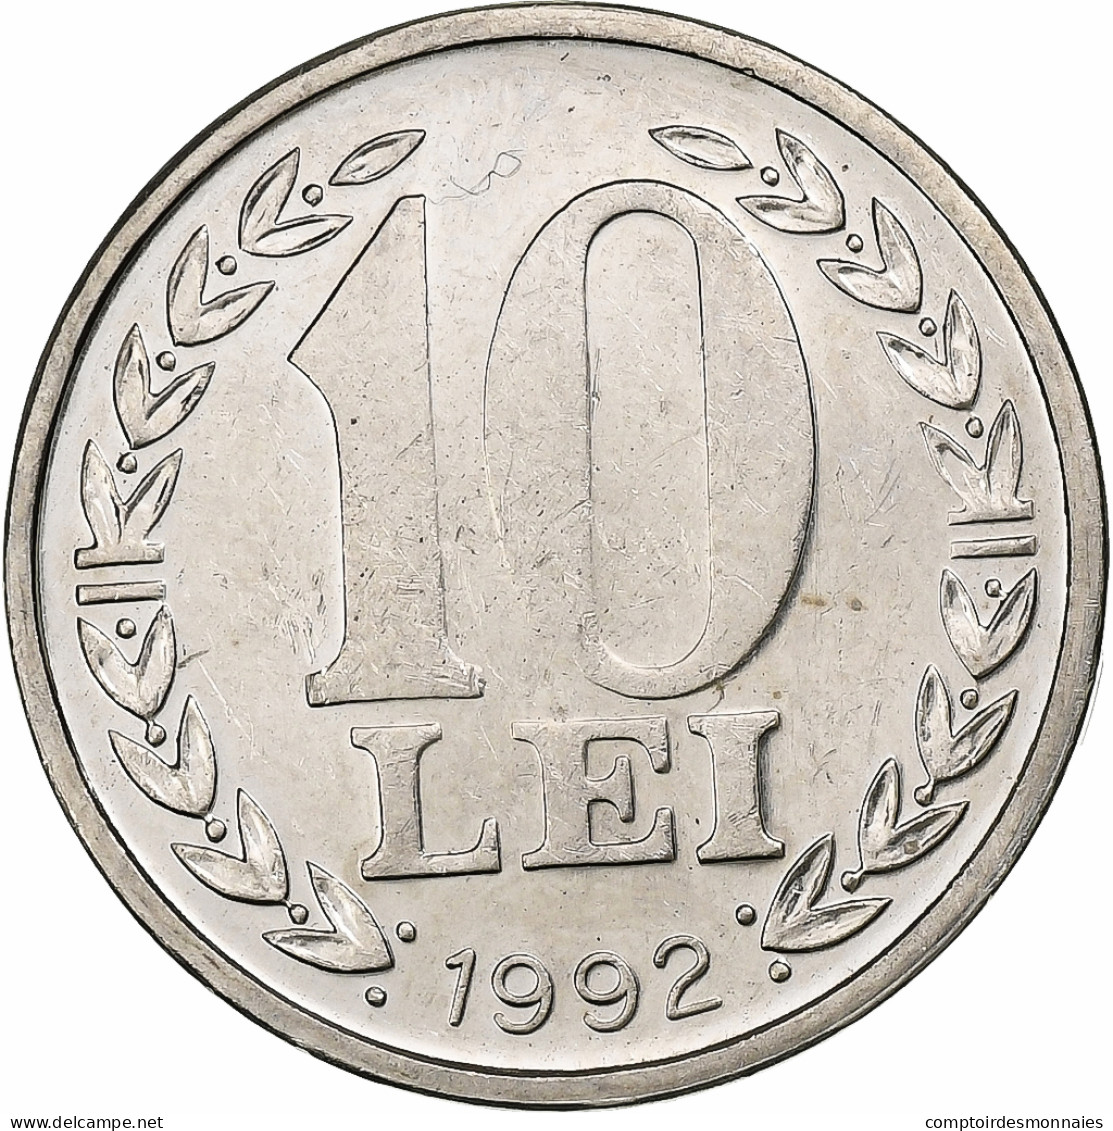 Roumanie, 10 Lei, 1992, Nickel Clad Steel, SUP, KM:108 - Roemenië